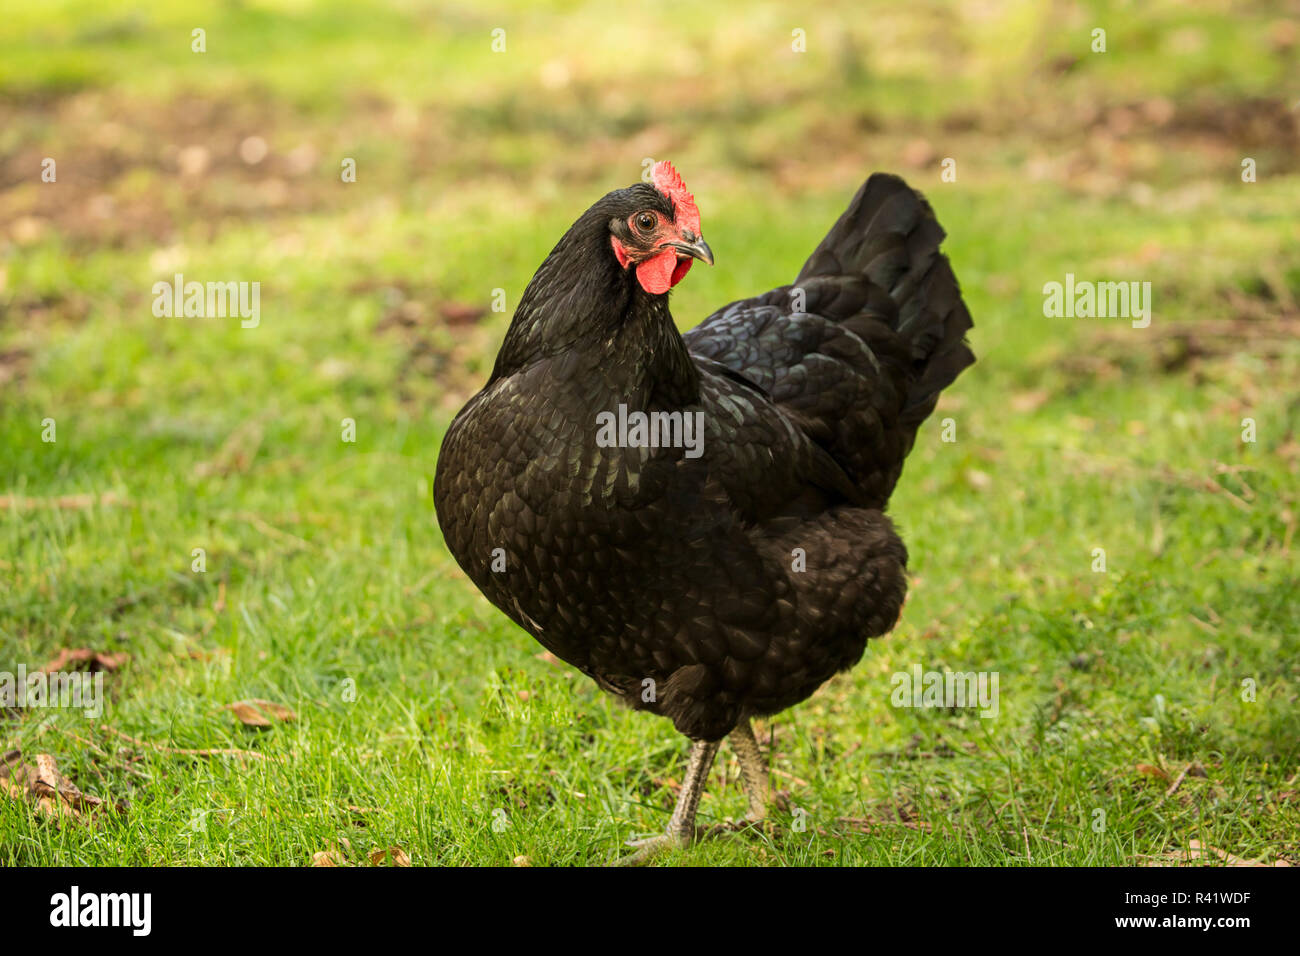 Issaquah, Washington State, USA. Les Black Australorp poulet. (PR) Banque D'Images